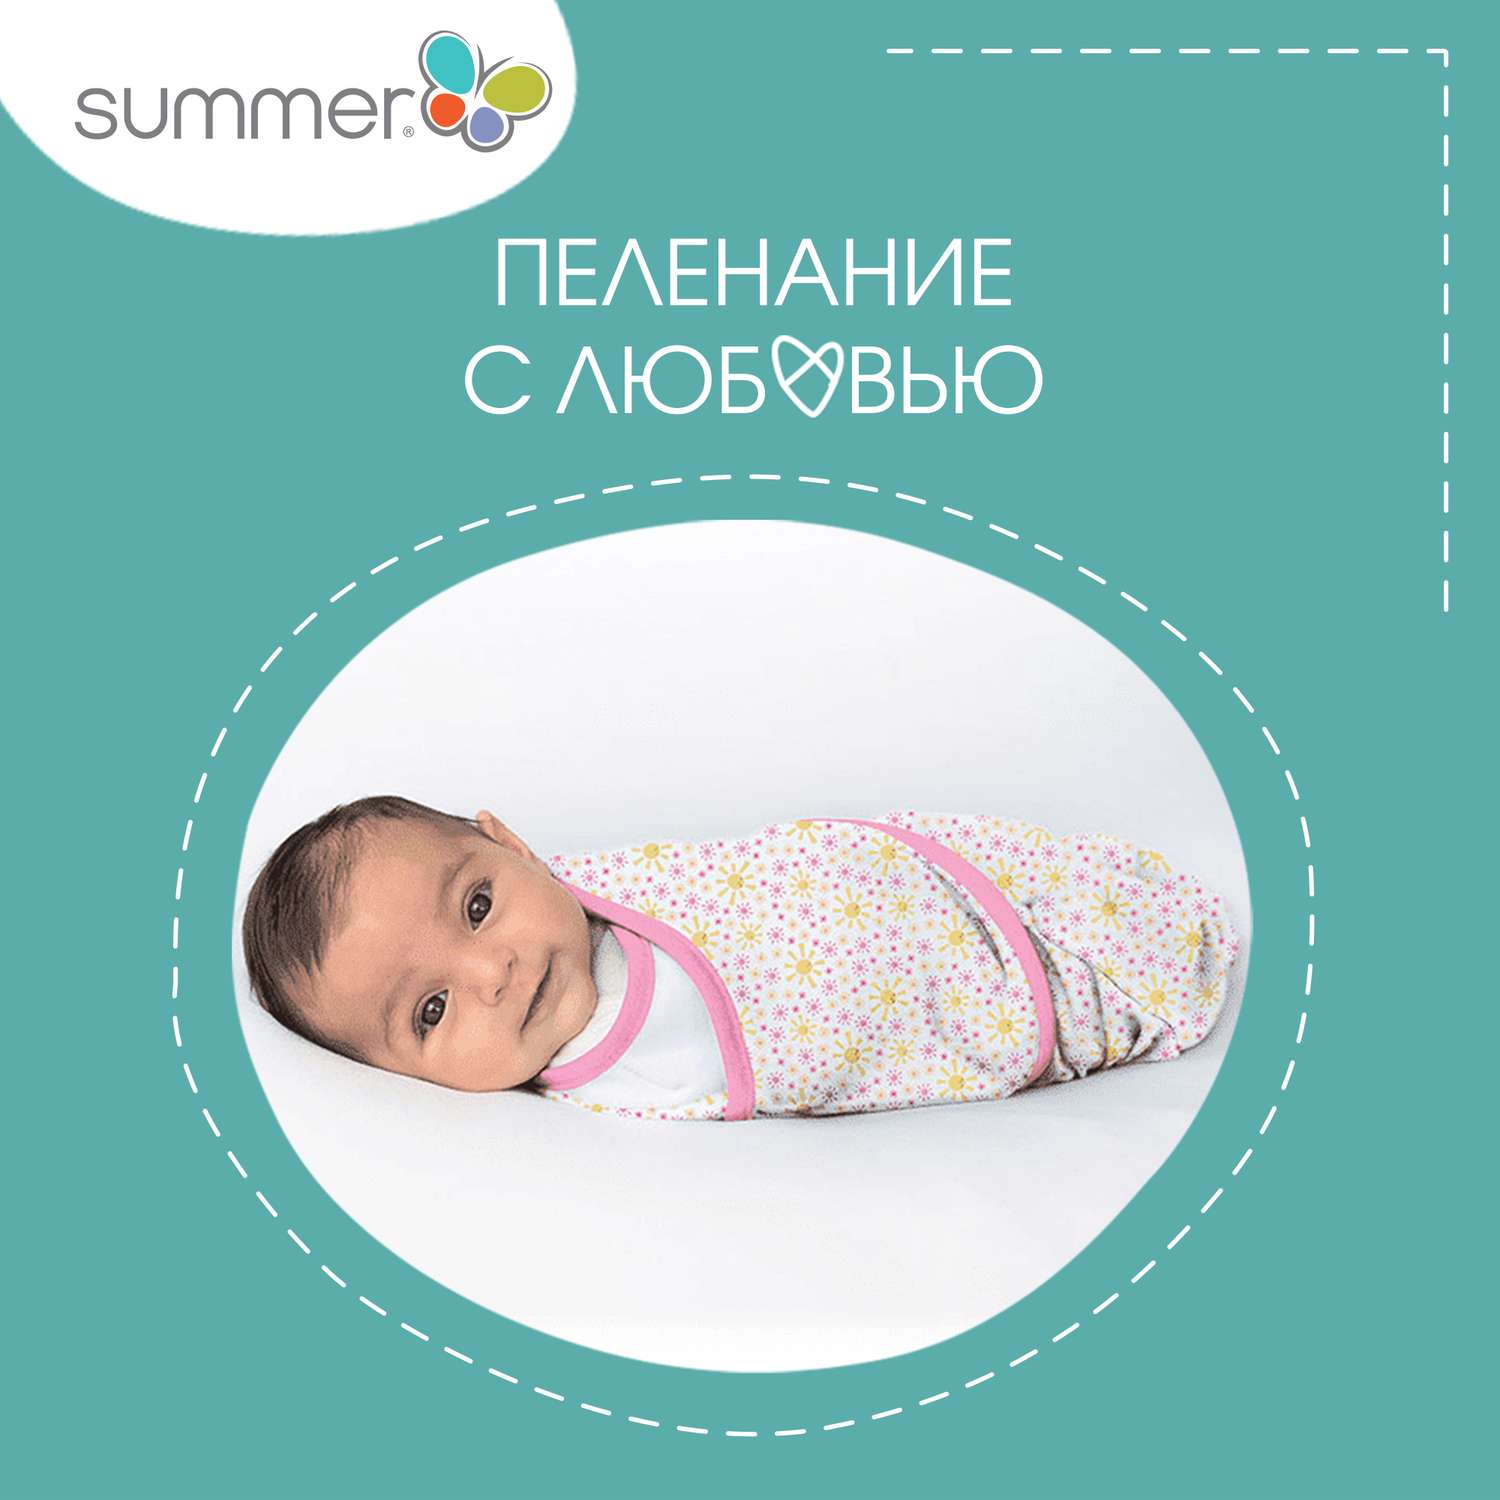 Конверт Summer Infant - фото 9